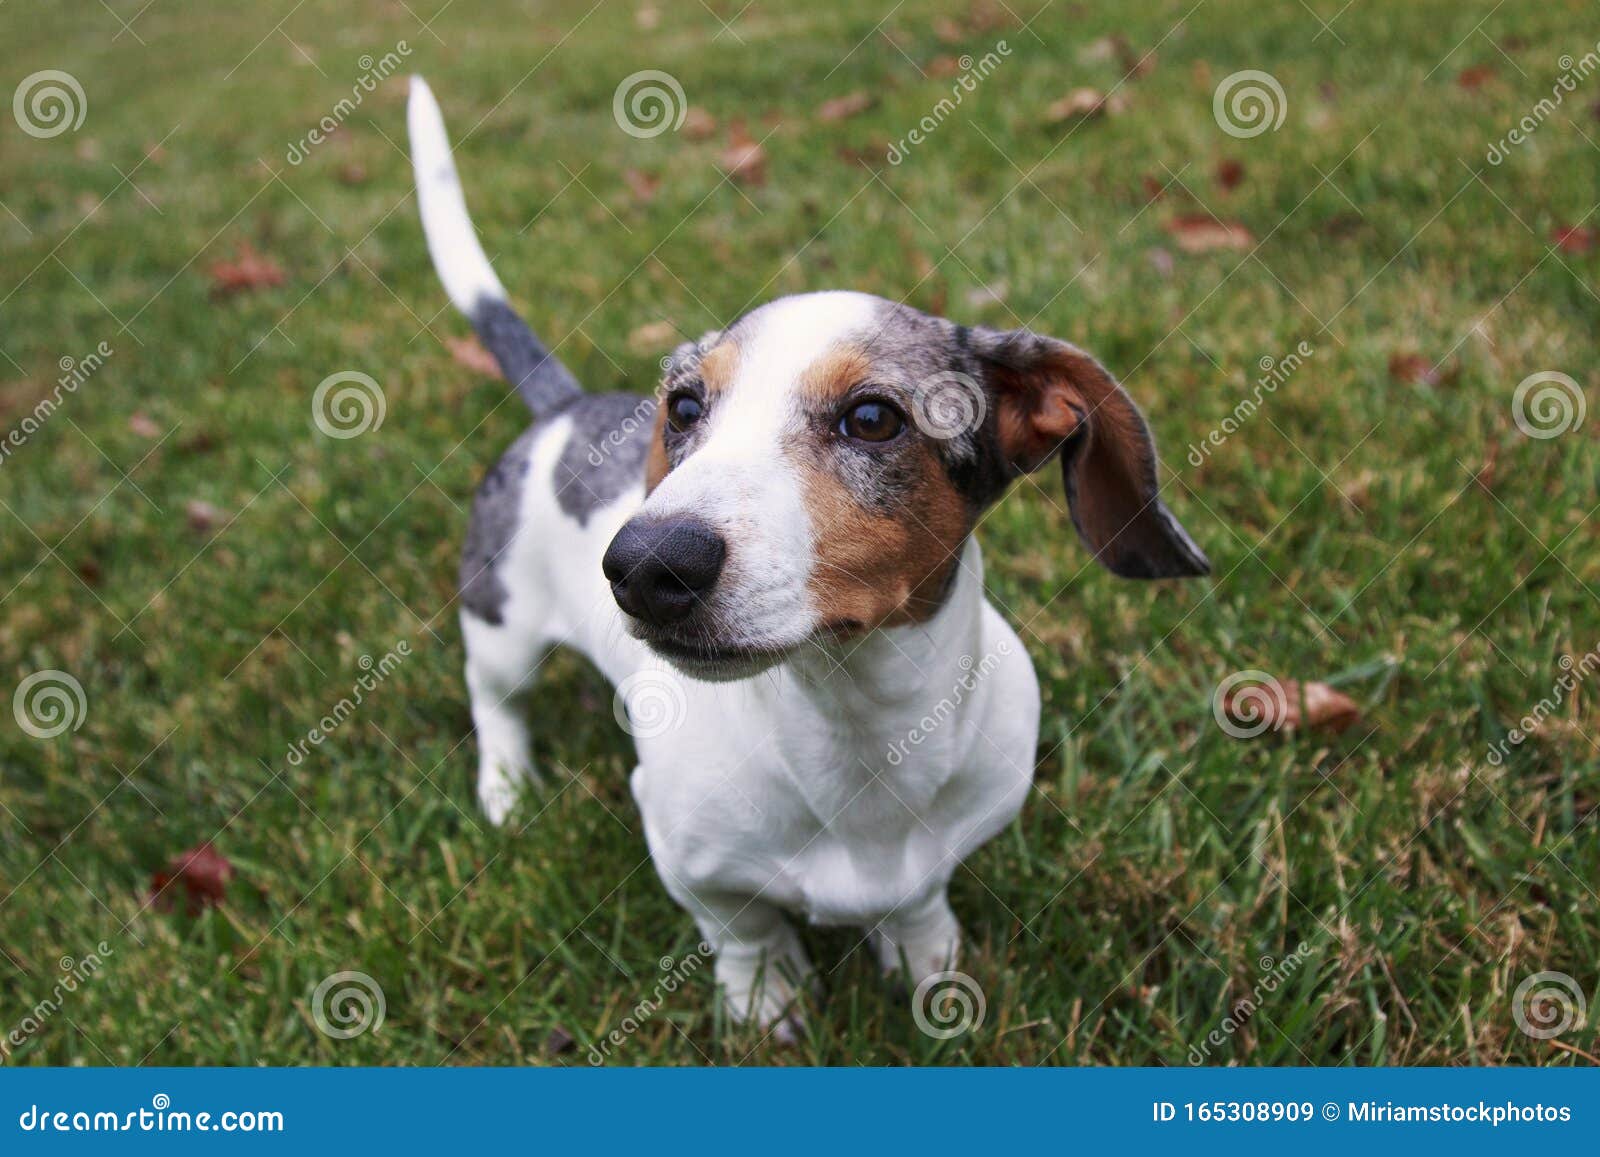 silver dapple dachshund